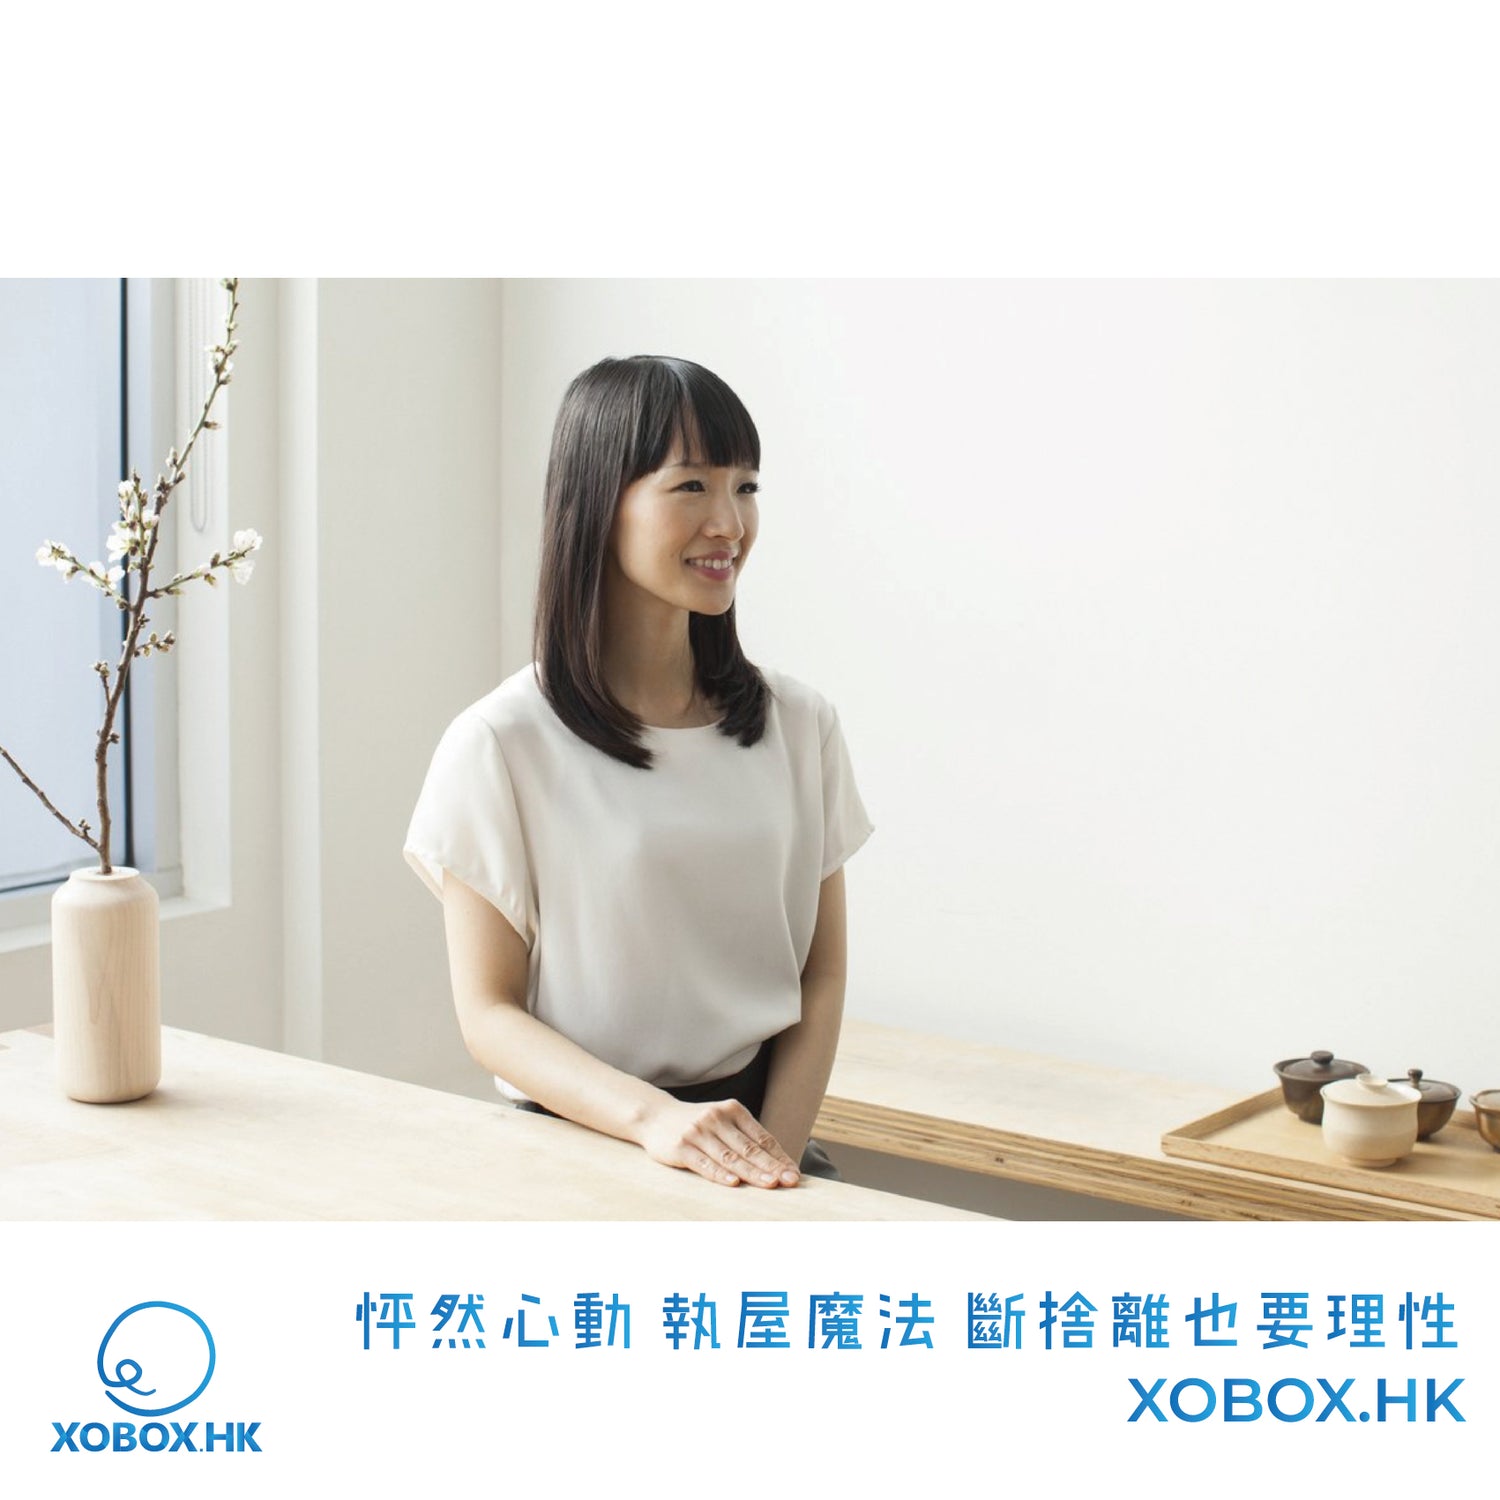 怦然心動 執屋魔法 斷捨離也要理性 | XOBOX.HK